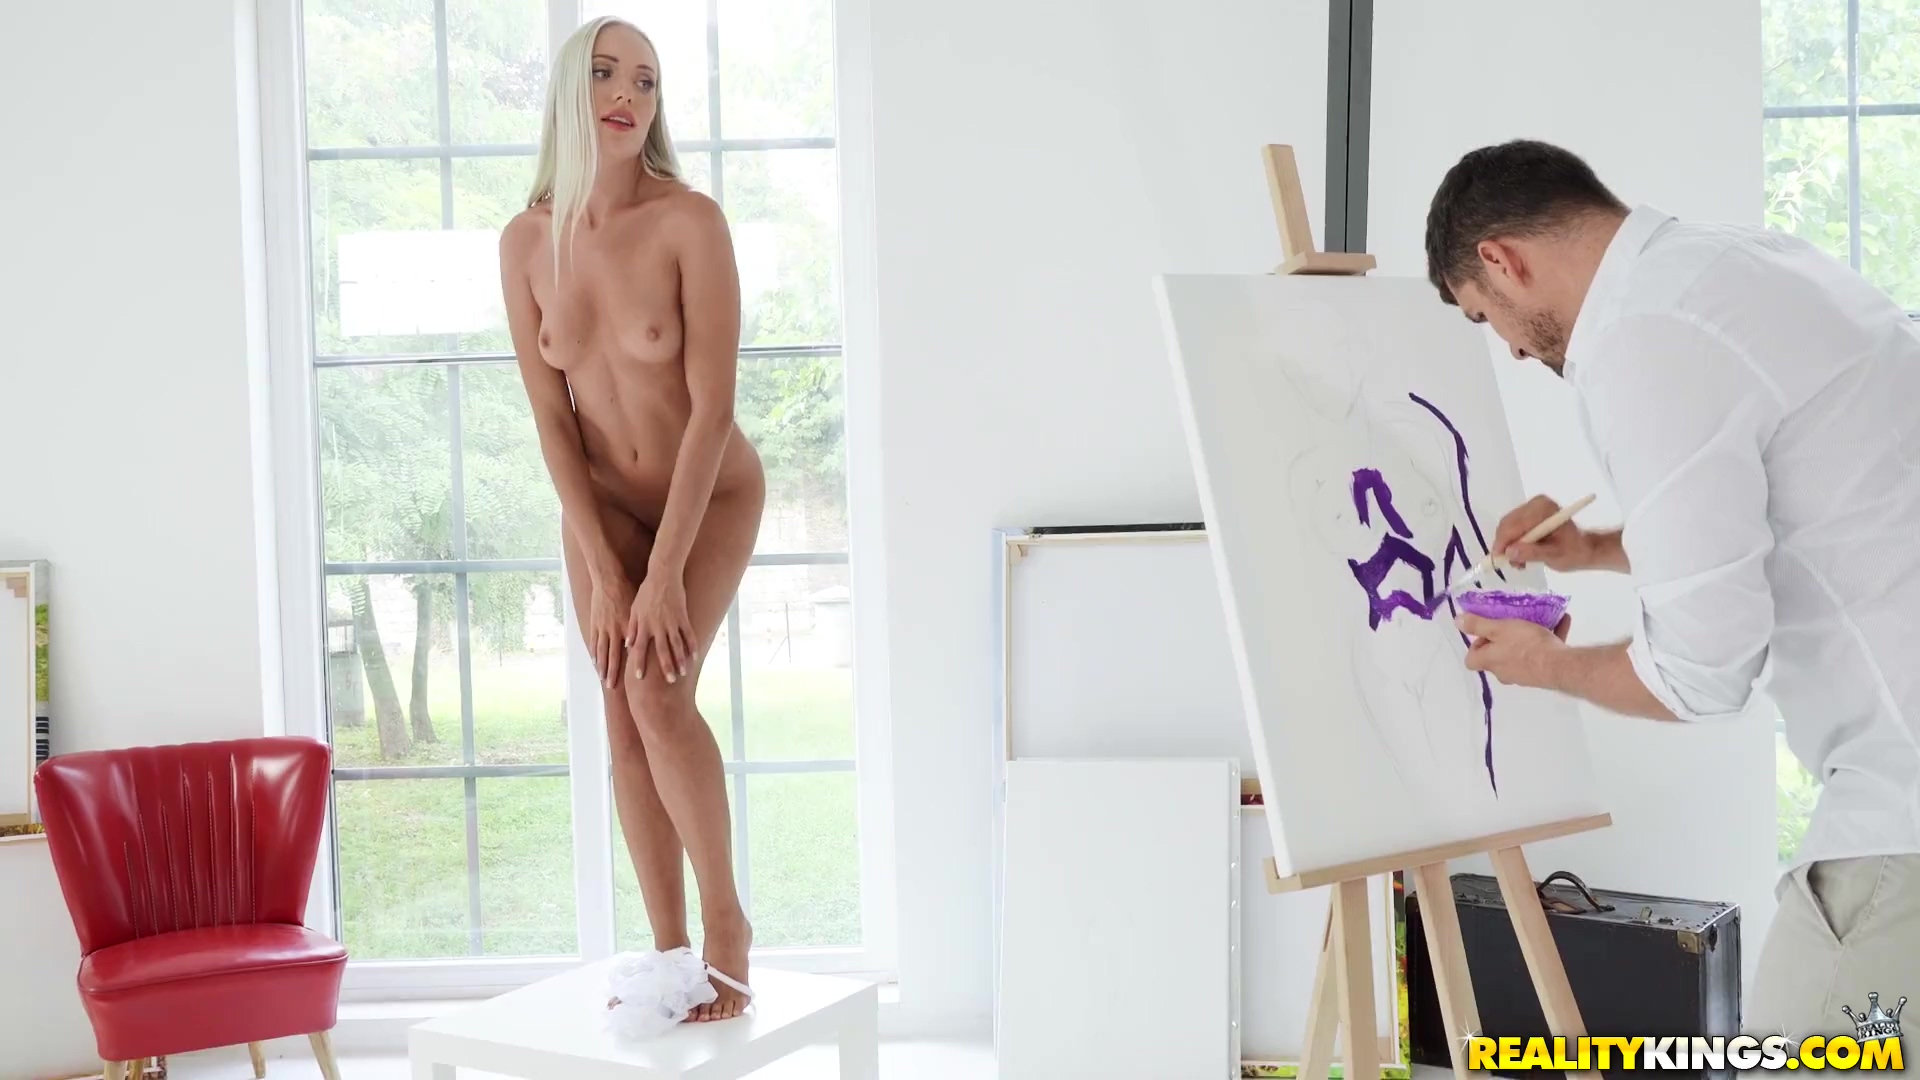 Aktmodel angelika greys verführt die Künstlerin dazu, sich mit ihr zu vergnügen statt zu malen Foto